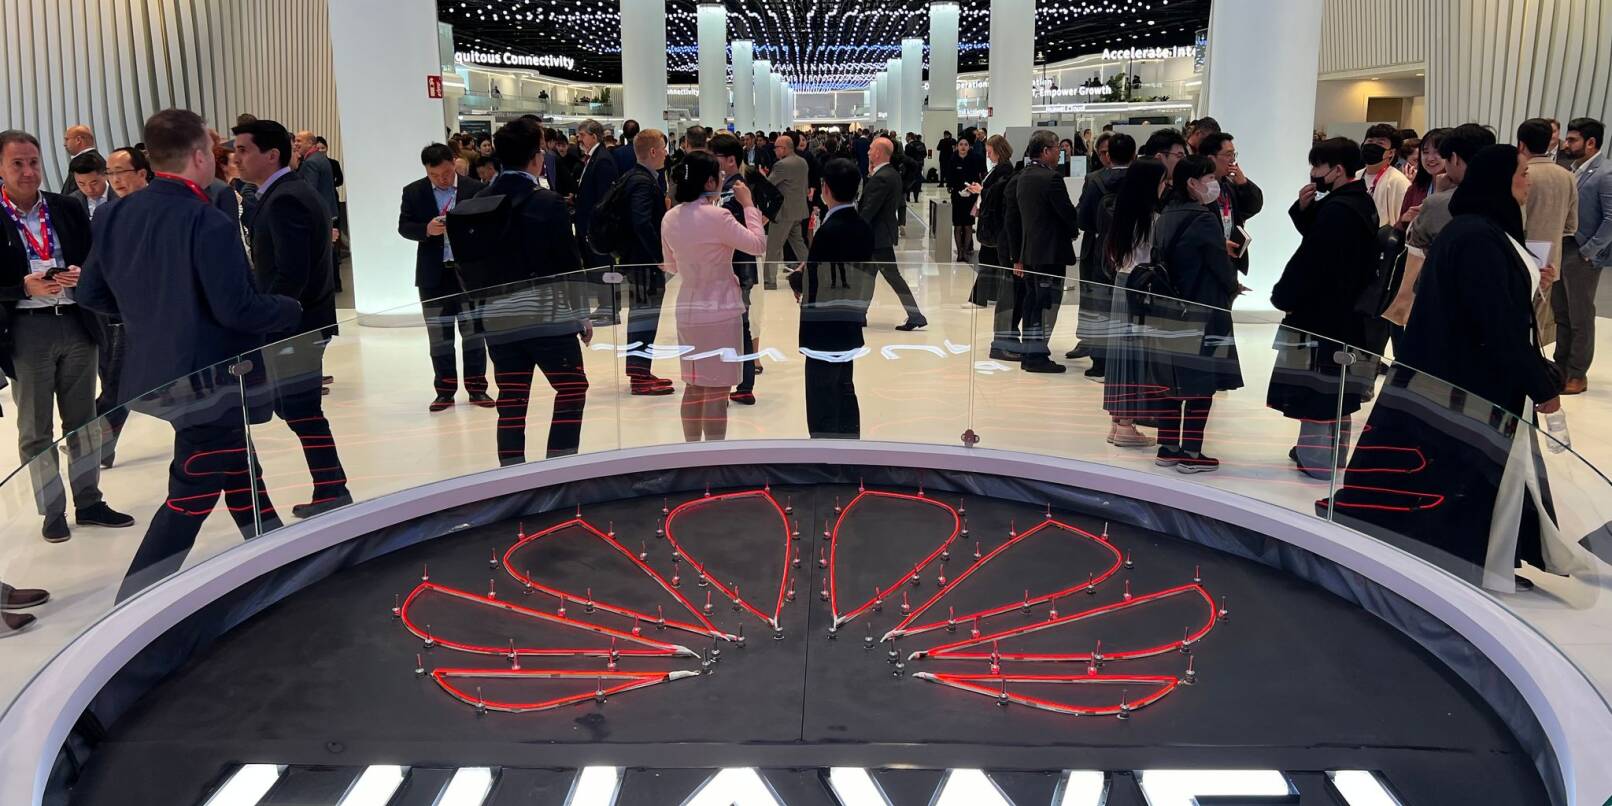 Das Logo des chinesischen Technologiekonzerns Huawei ist am Eingang seines Messestandes beim Mobile World Congress (MWC) zu sehen.